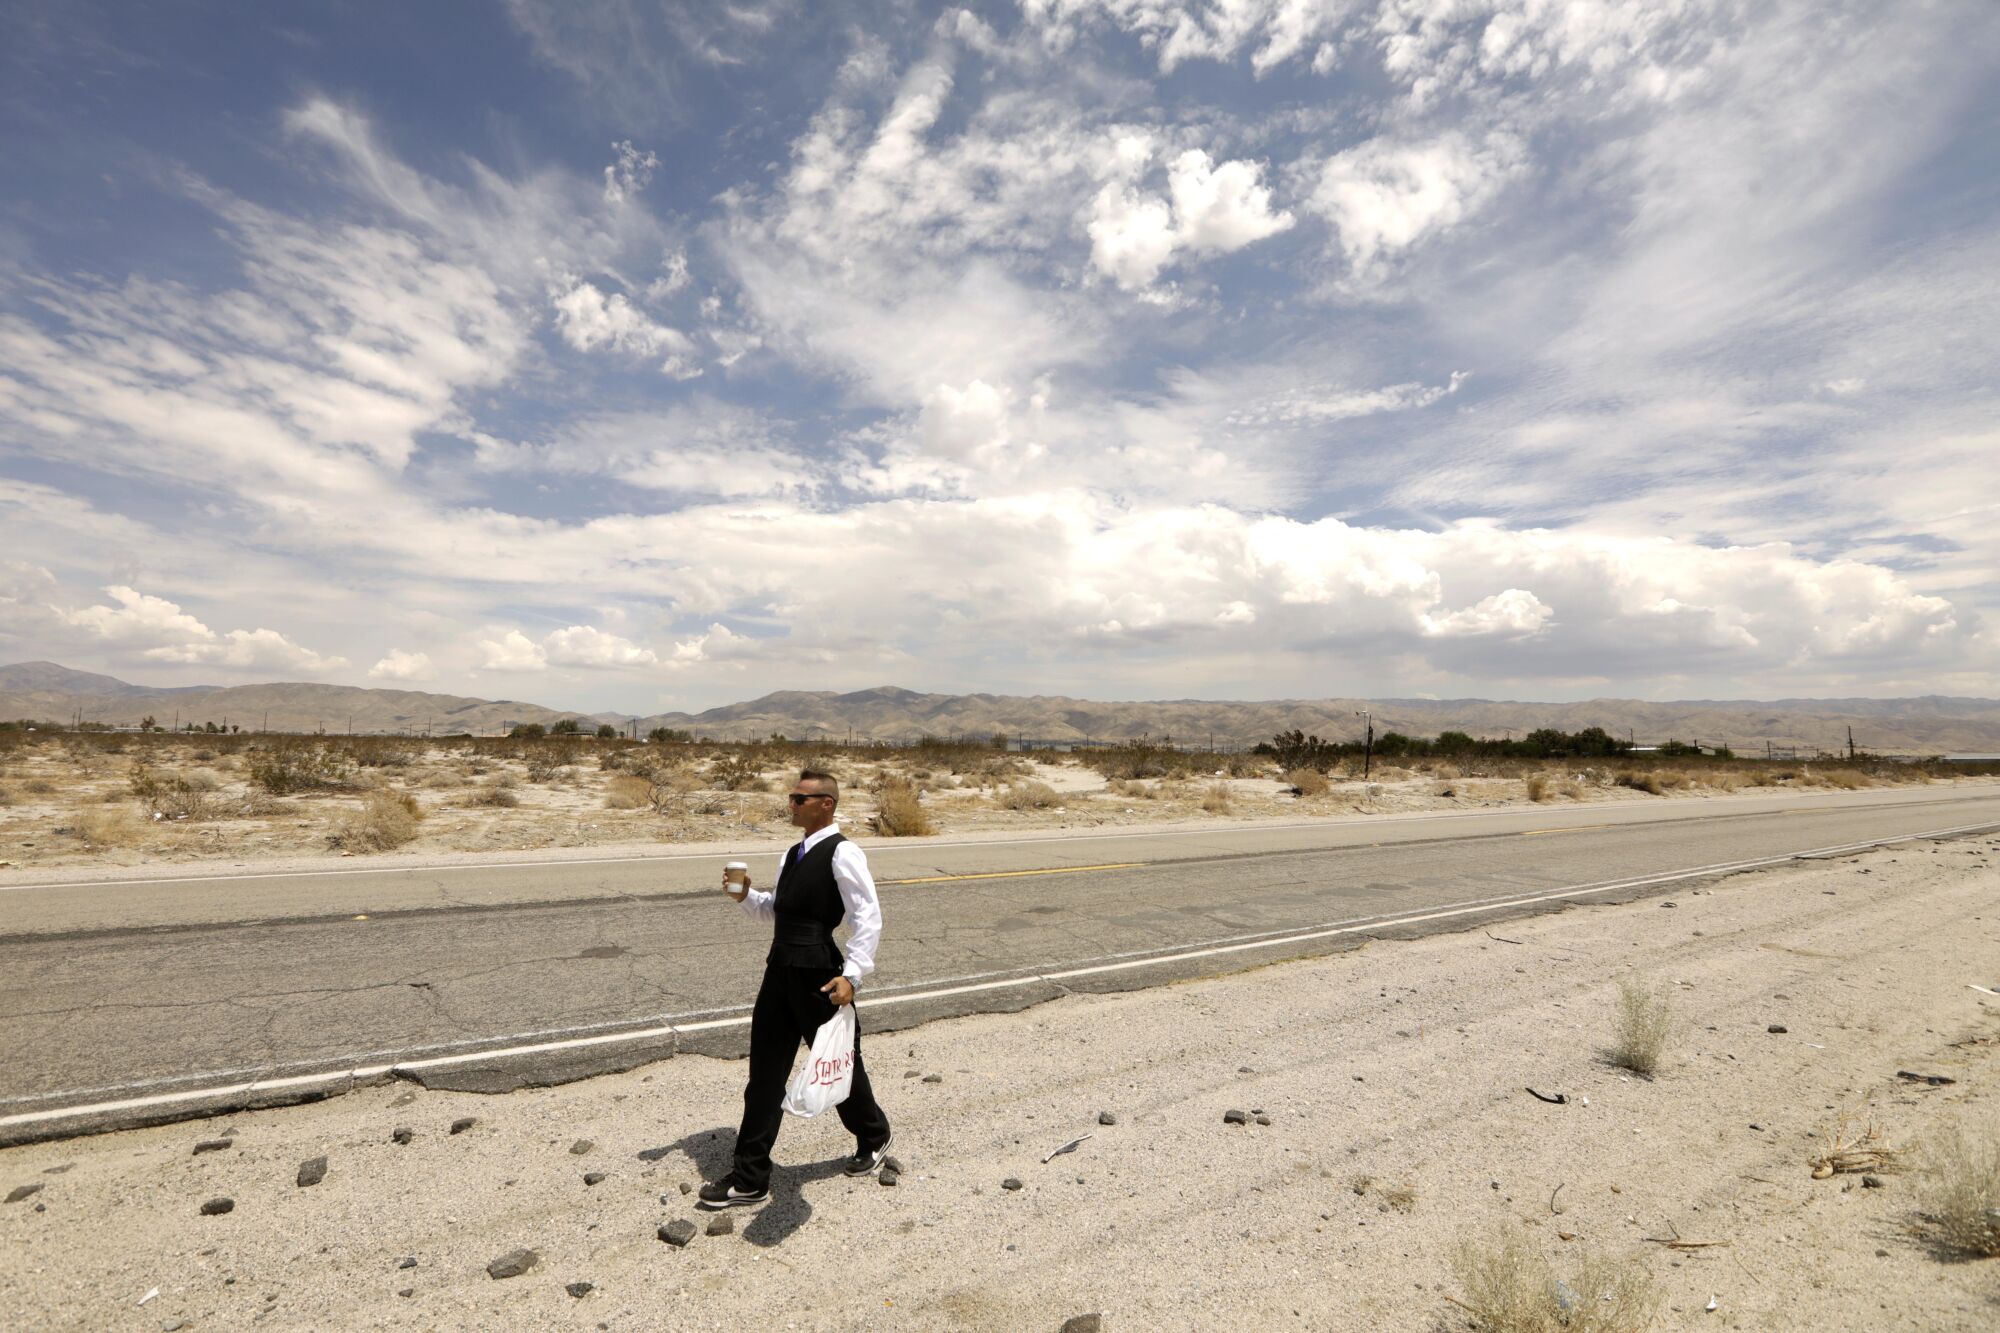 Roger Embrey walks to a job interview along a desert road